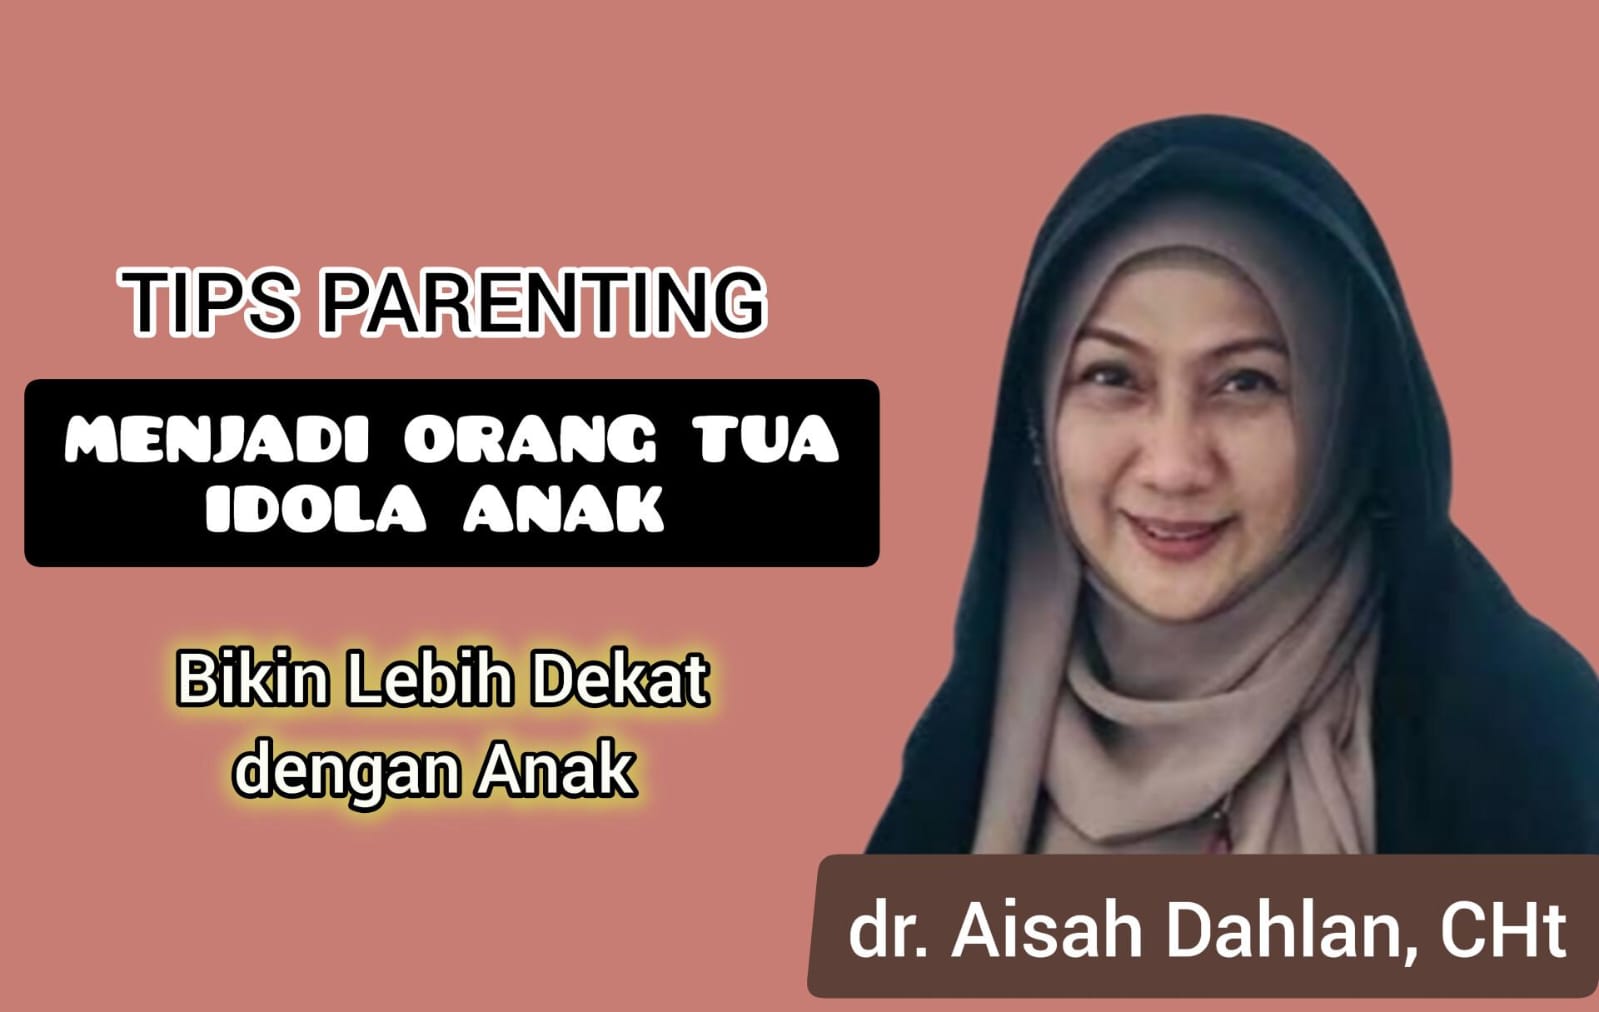 Biar Jadi Orang Tua yang Diidolakan Anak, Ini Dia 3 Tips Parenting dr Aisah Dahlan yang Bisa Diterapkan